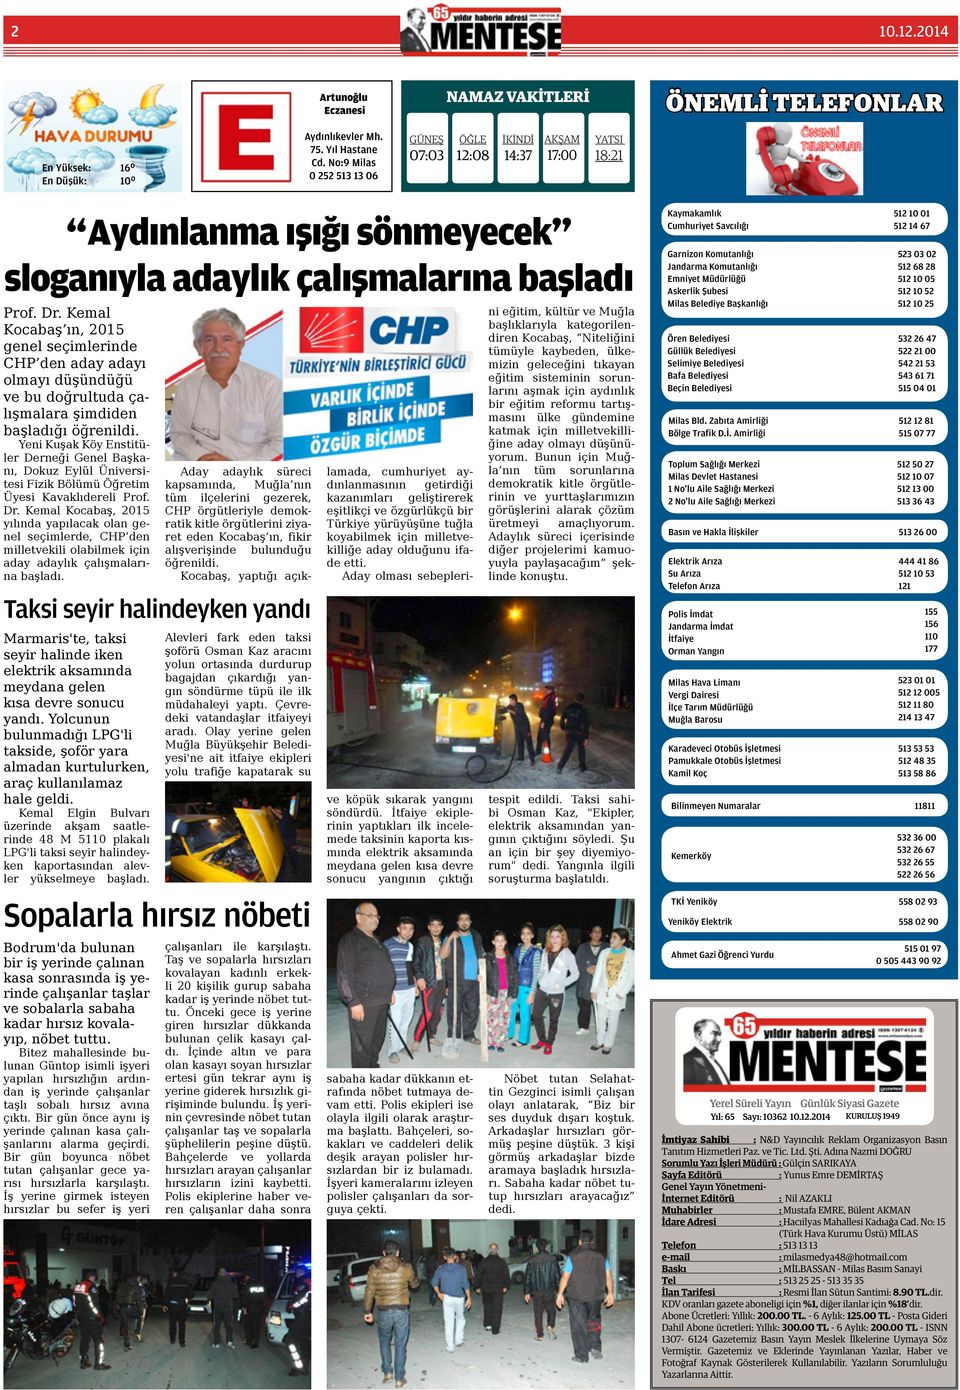 Kemal Kocabaş ın, 2015 genel seçimlerinde CHP den aday adayı olmayı düşündüğü ve bu doğrultuda çalışmalara şimdiden başladığı öğrenildi.